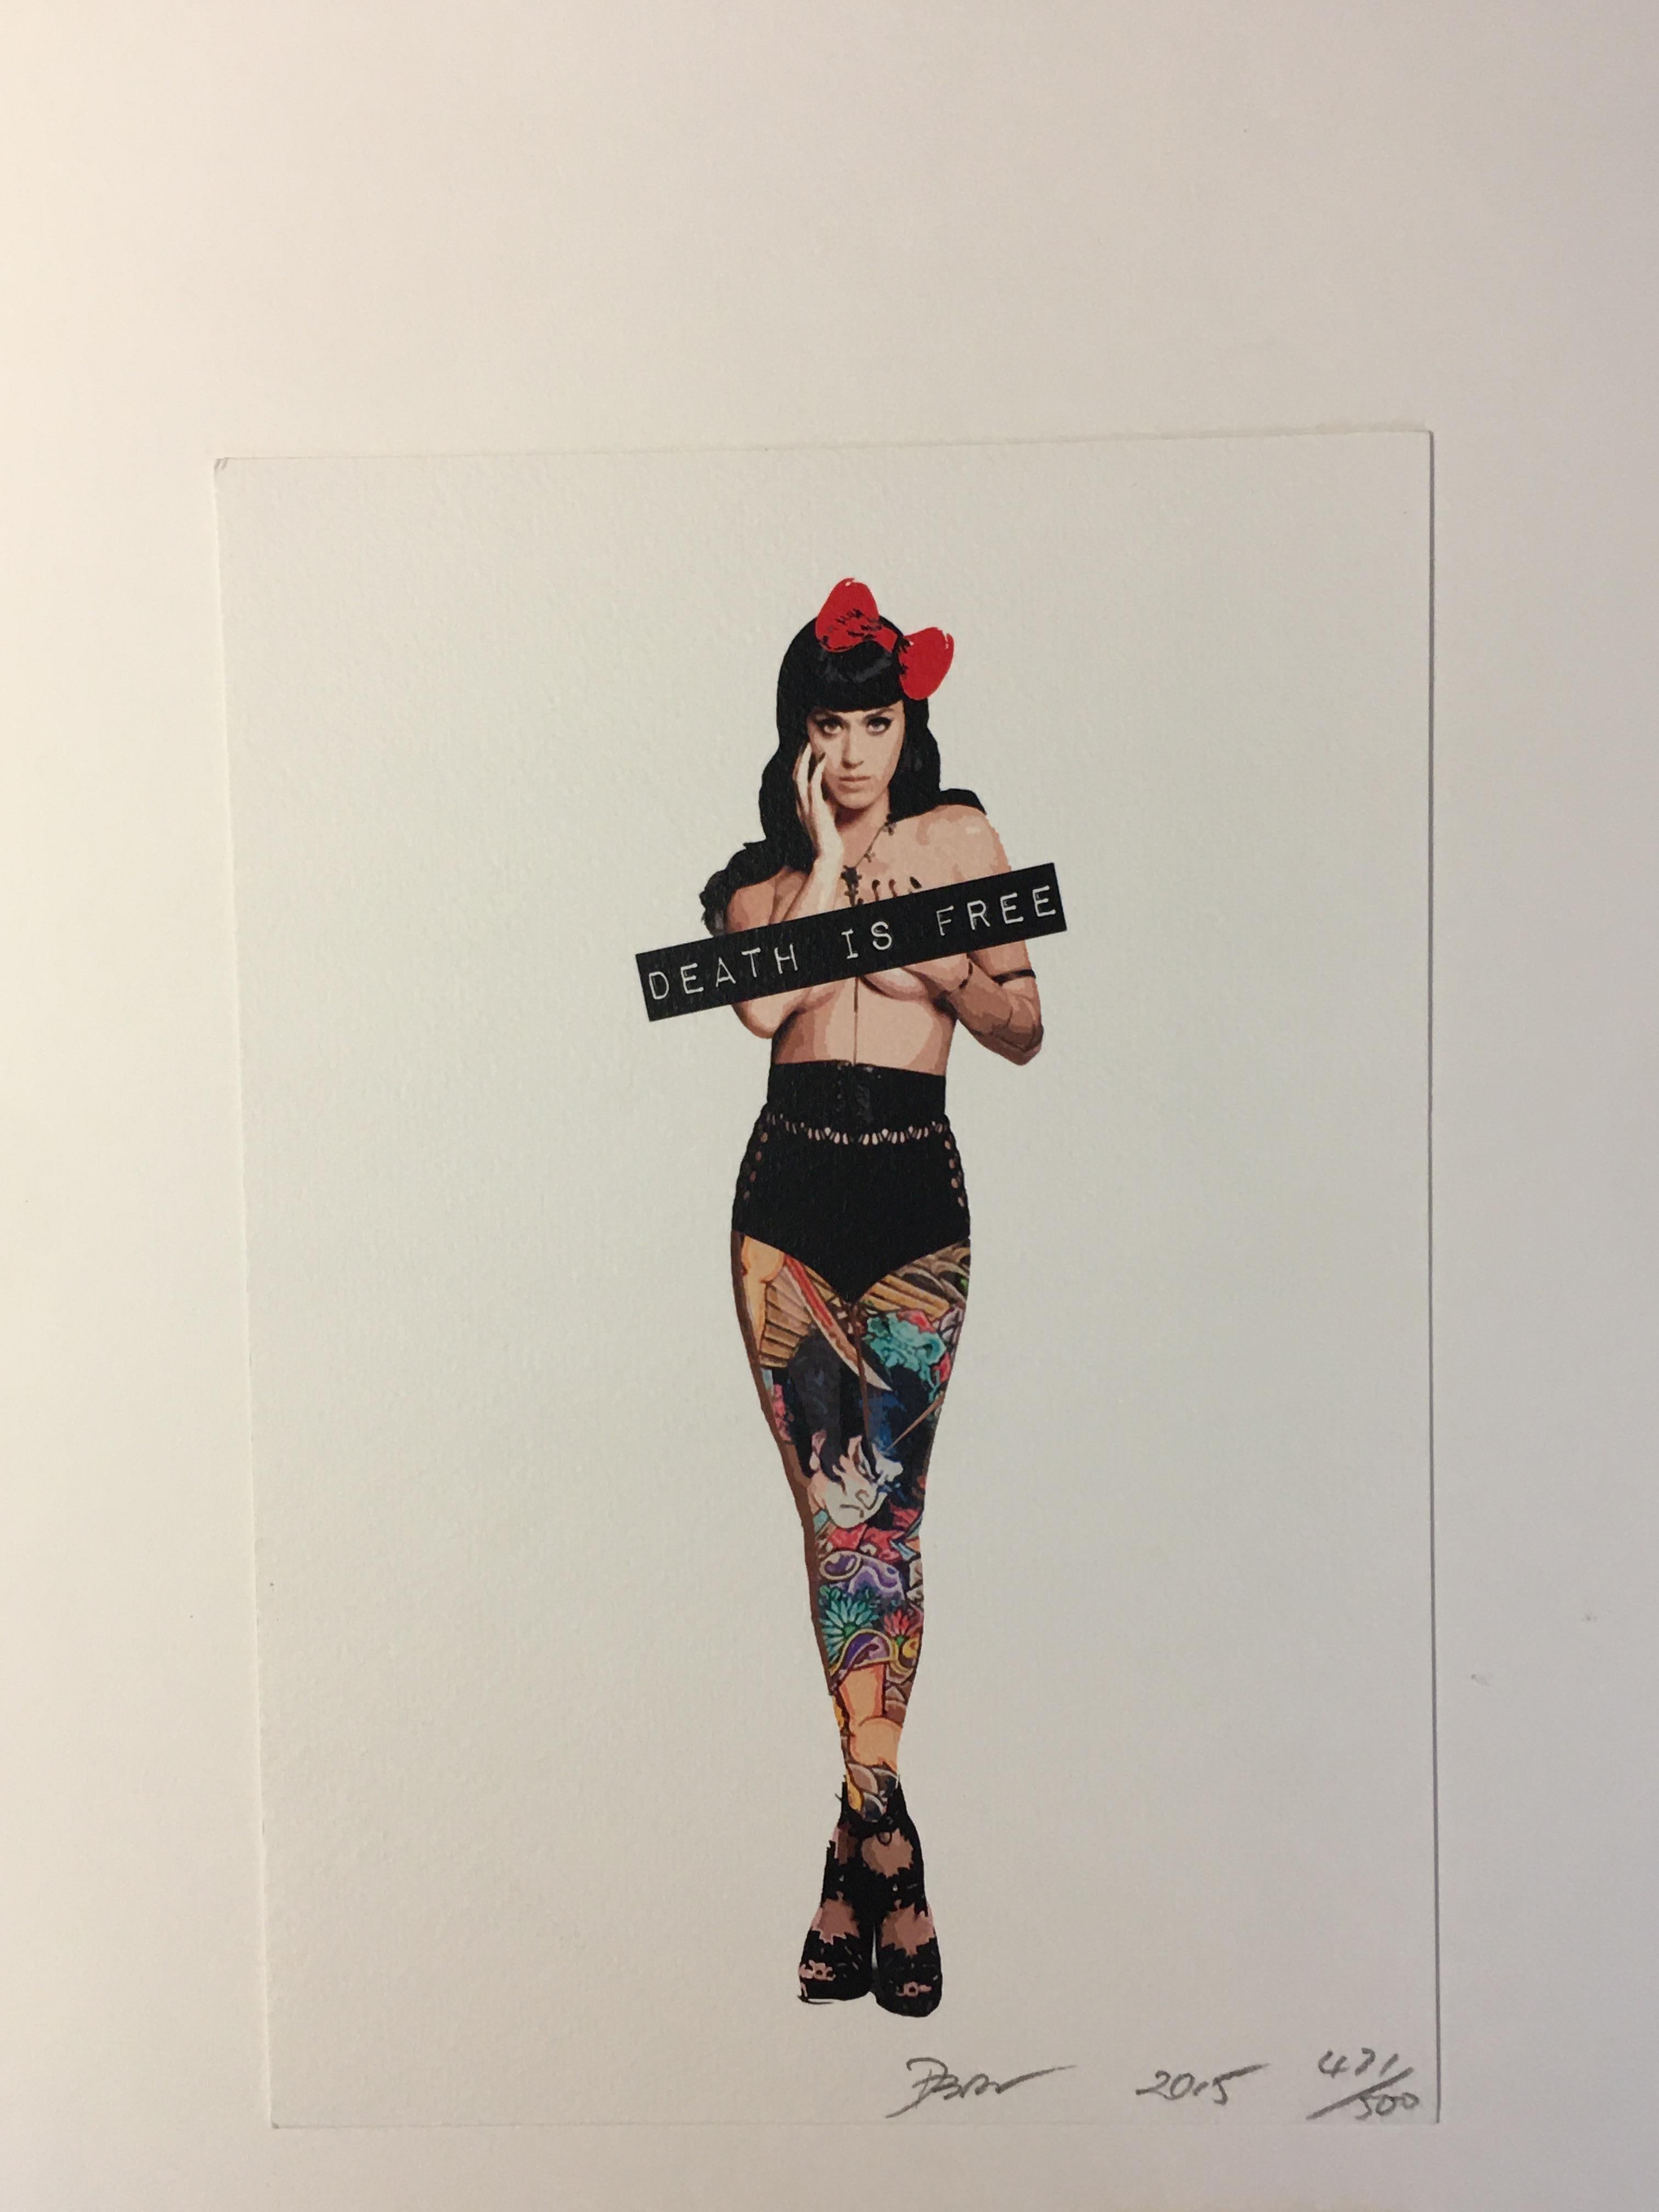 Katy Perry death
Sérigraphie signée, numérotée et datée au crayon
2 certificats de l'artiste
21x15
prix : 49 euro
